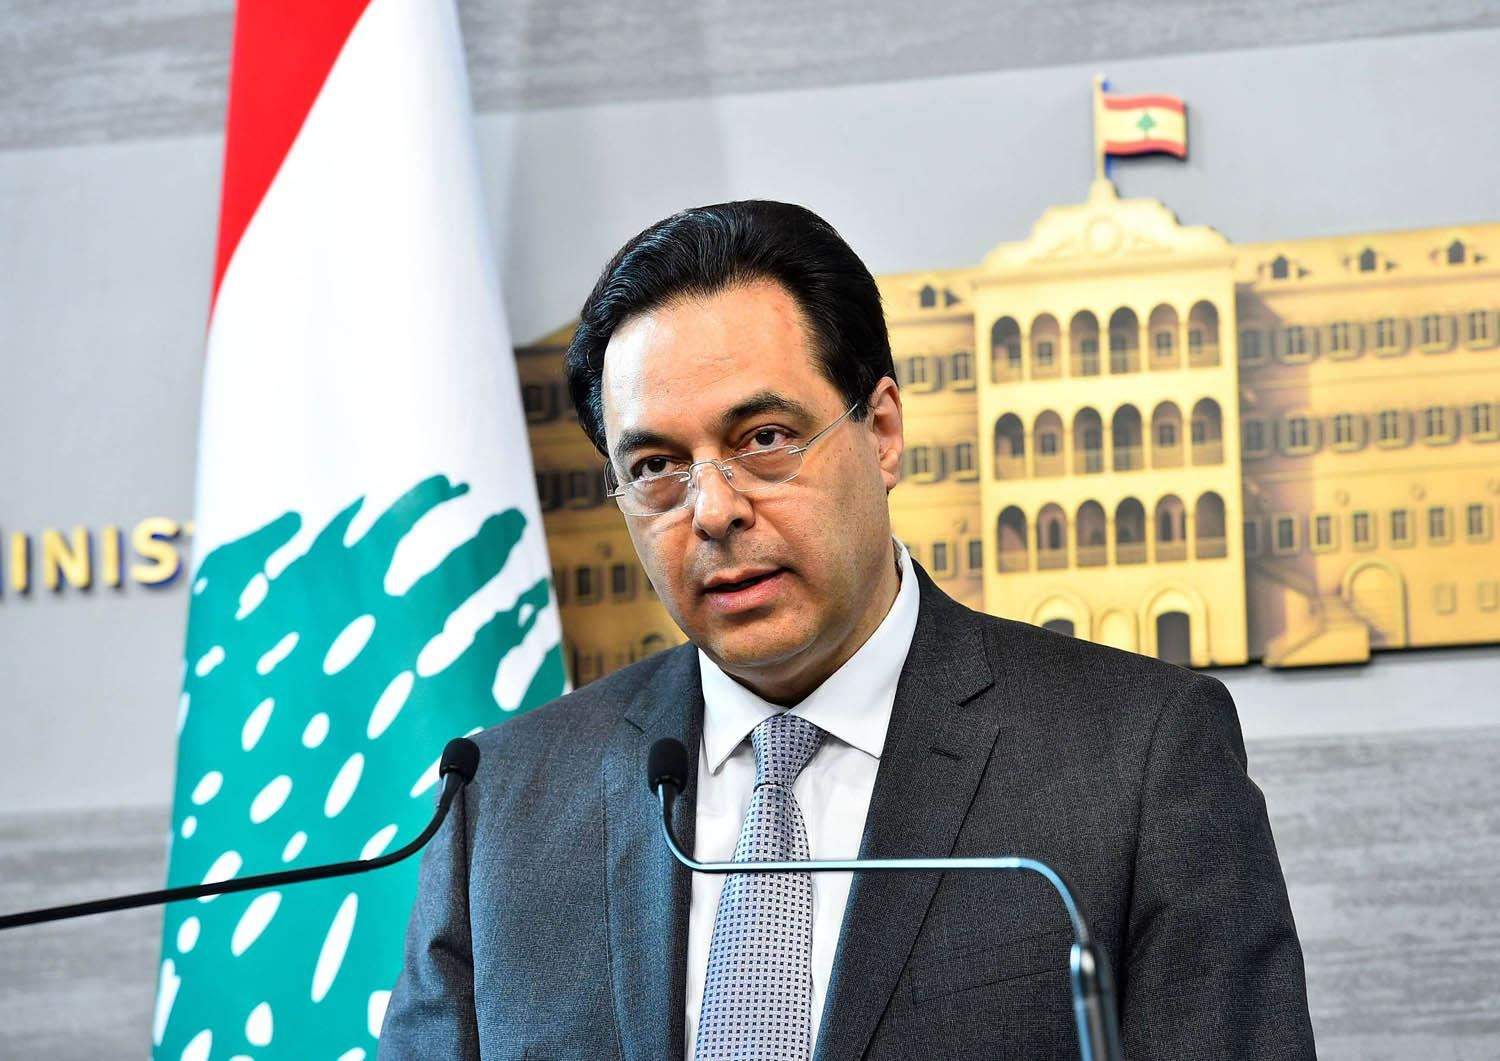 دياب: الخلافات اللبنانية غير عصيّة على الحلّ لكن يتم استغلالها لتحقيق مآرب سياسيّة